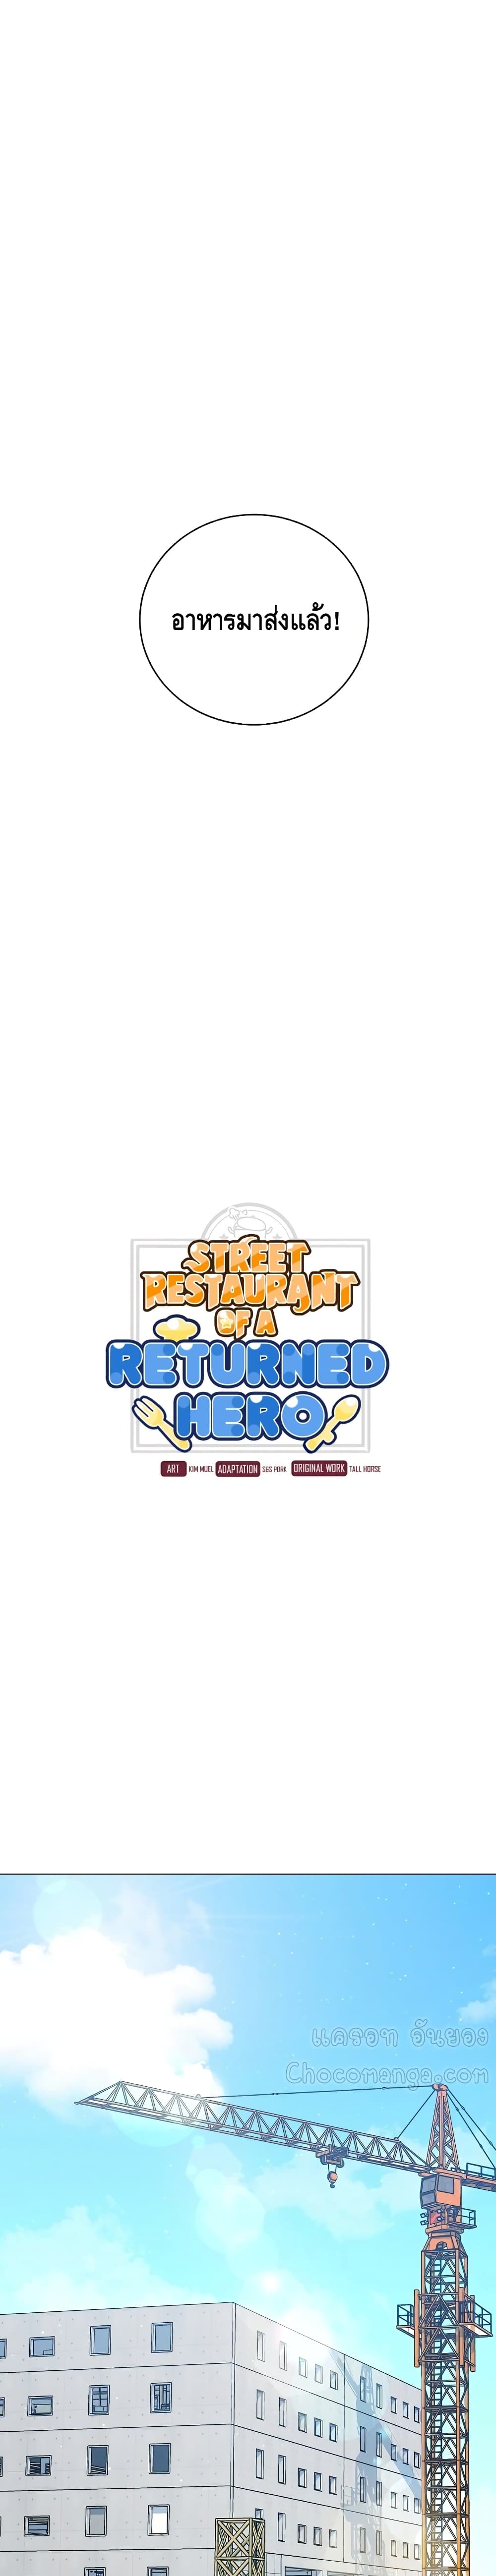 Street Restaurant of a Returned Hero 26 02